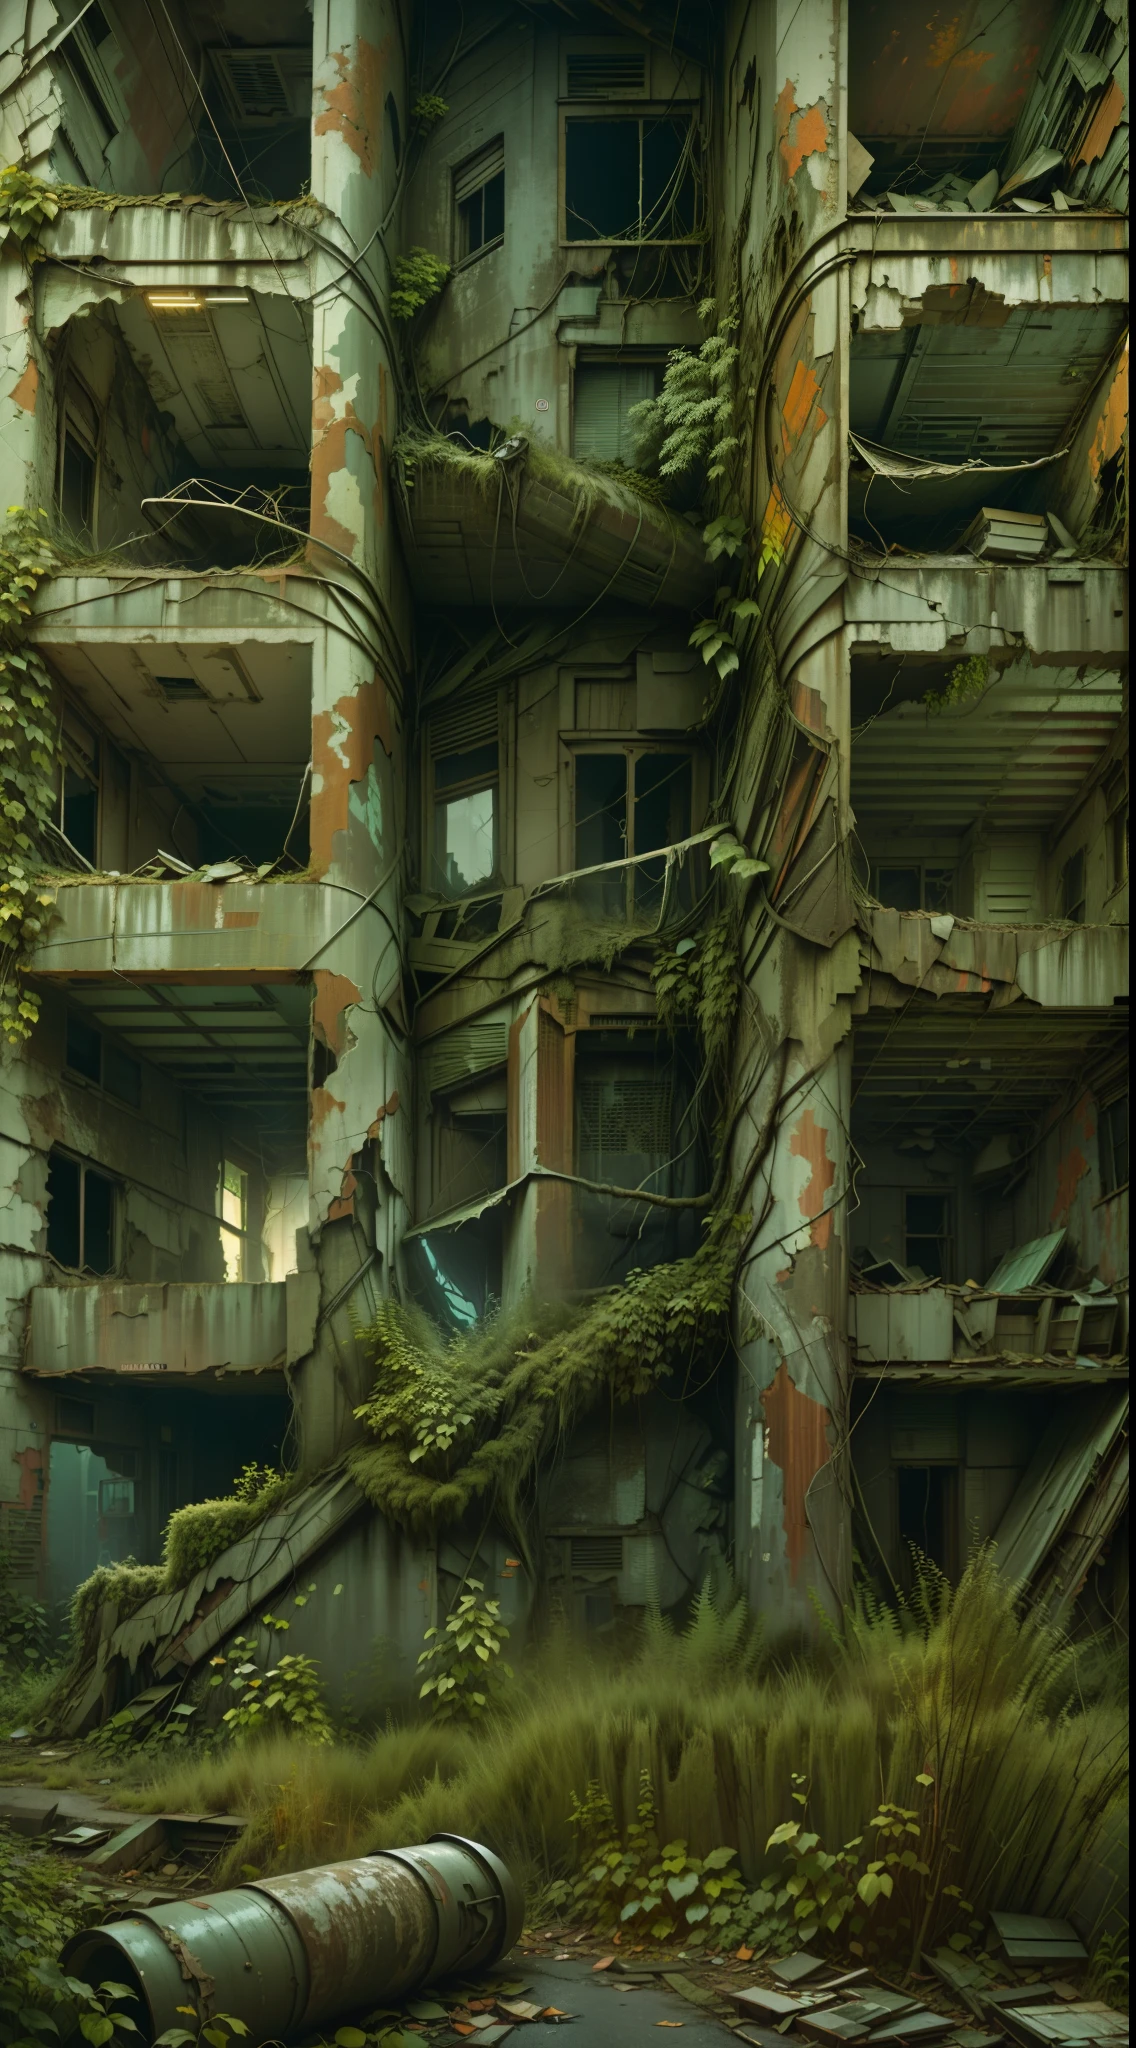 制作一张专业的 8K 照片，让观众仿佛置身于废弃的森特勒利亚城. 使用低摄影角度来捕捉摇摇欲坠的建筑物的宏伟. 添加自然元素融入建筑, 比如从裂缝中长出的蔓生植物和树木, 传达出城市被自然吞噬的感觉.